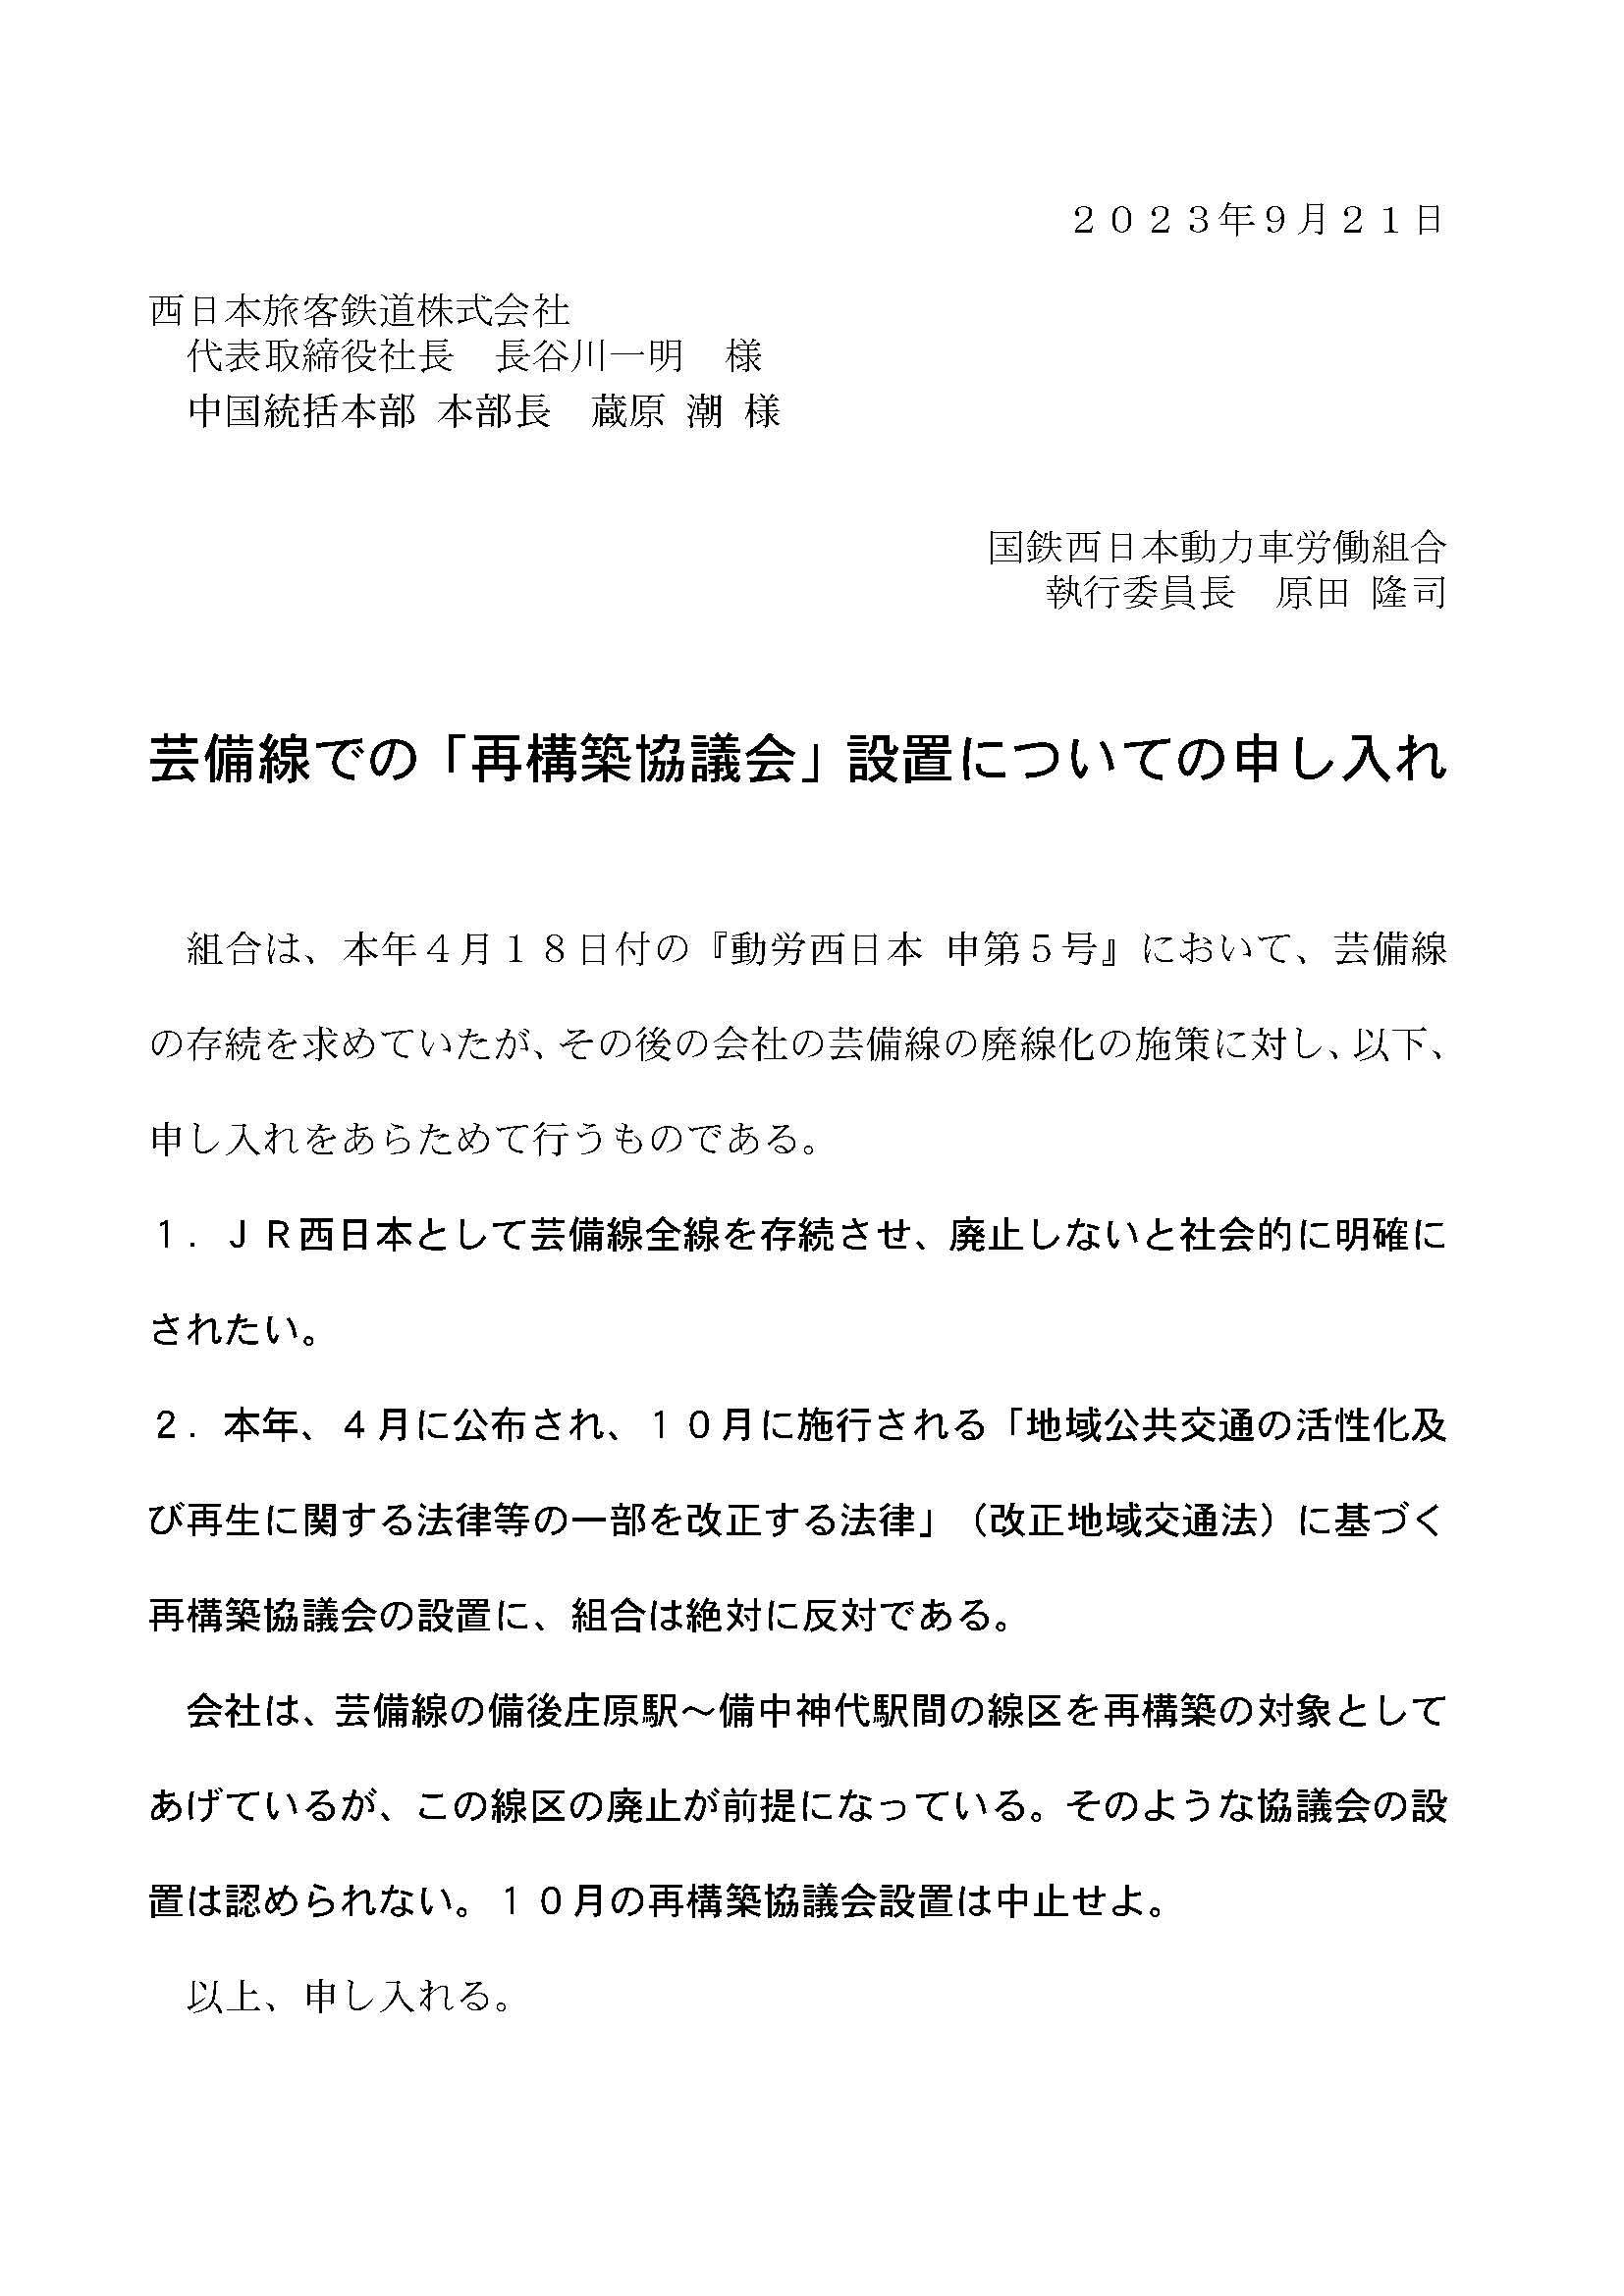 ９月２１日、芸備線での「再構築協議会」設置についての申し入れをＪＲ西日本中国統括本部へ提出_d0155415_23464924.jpg